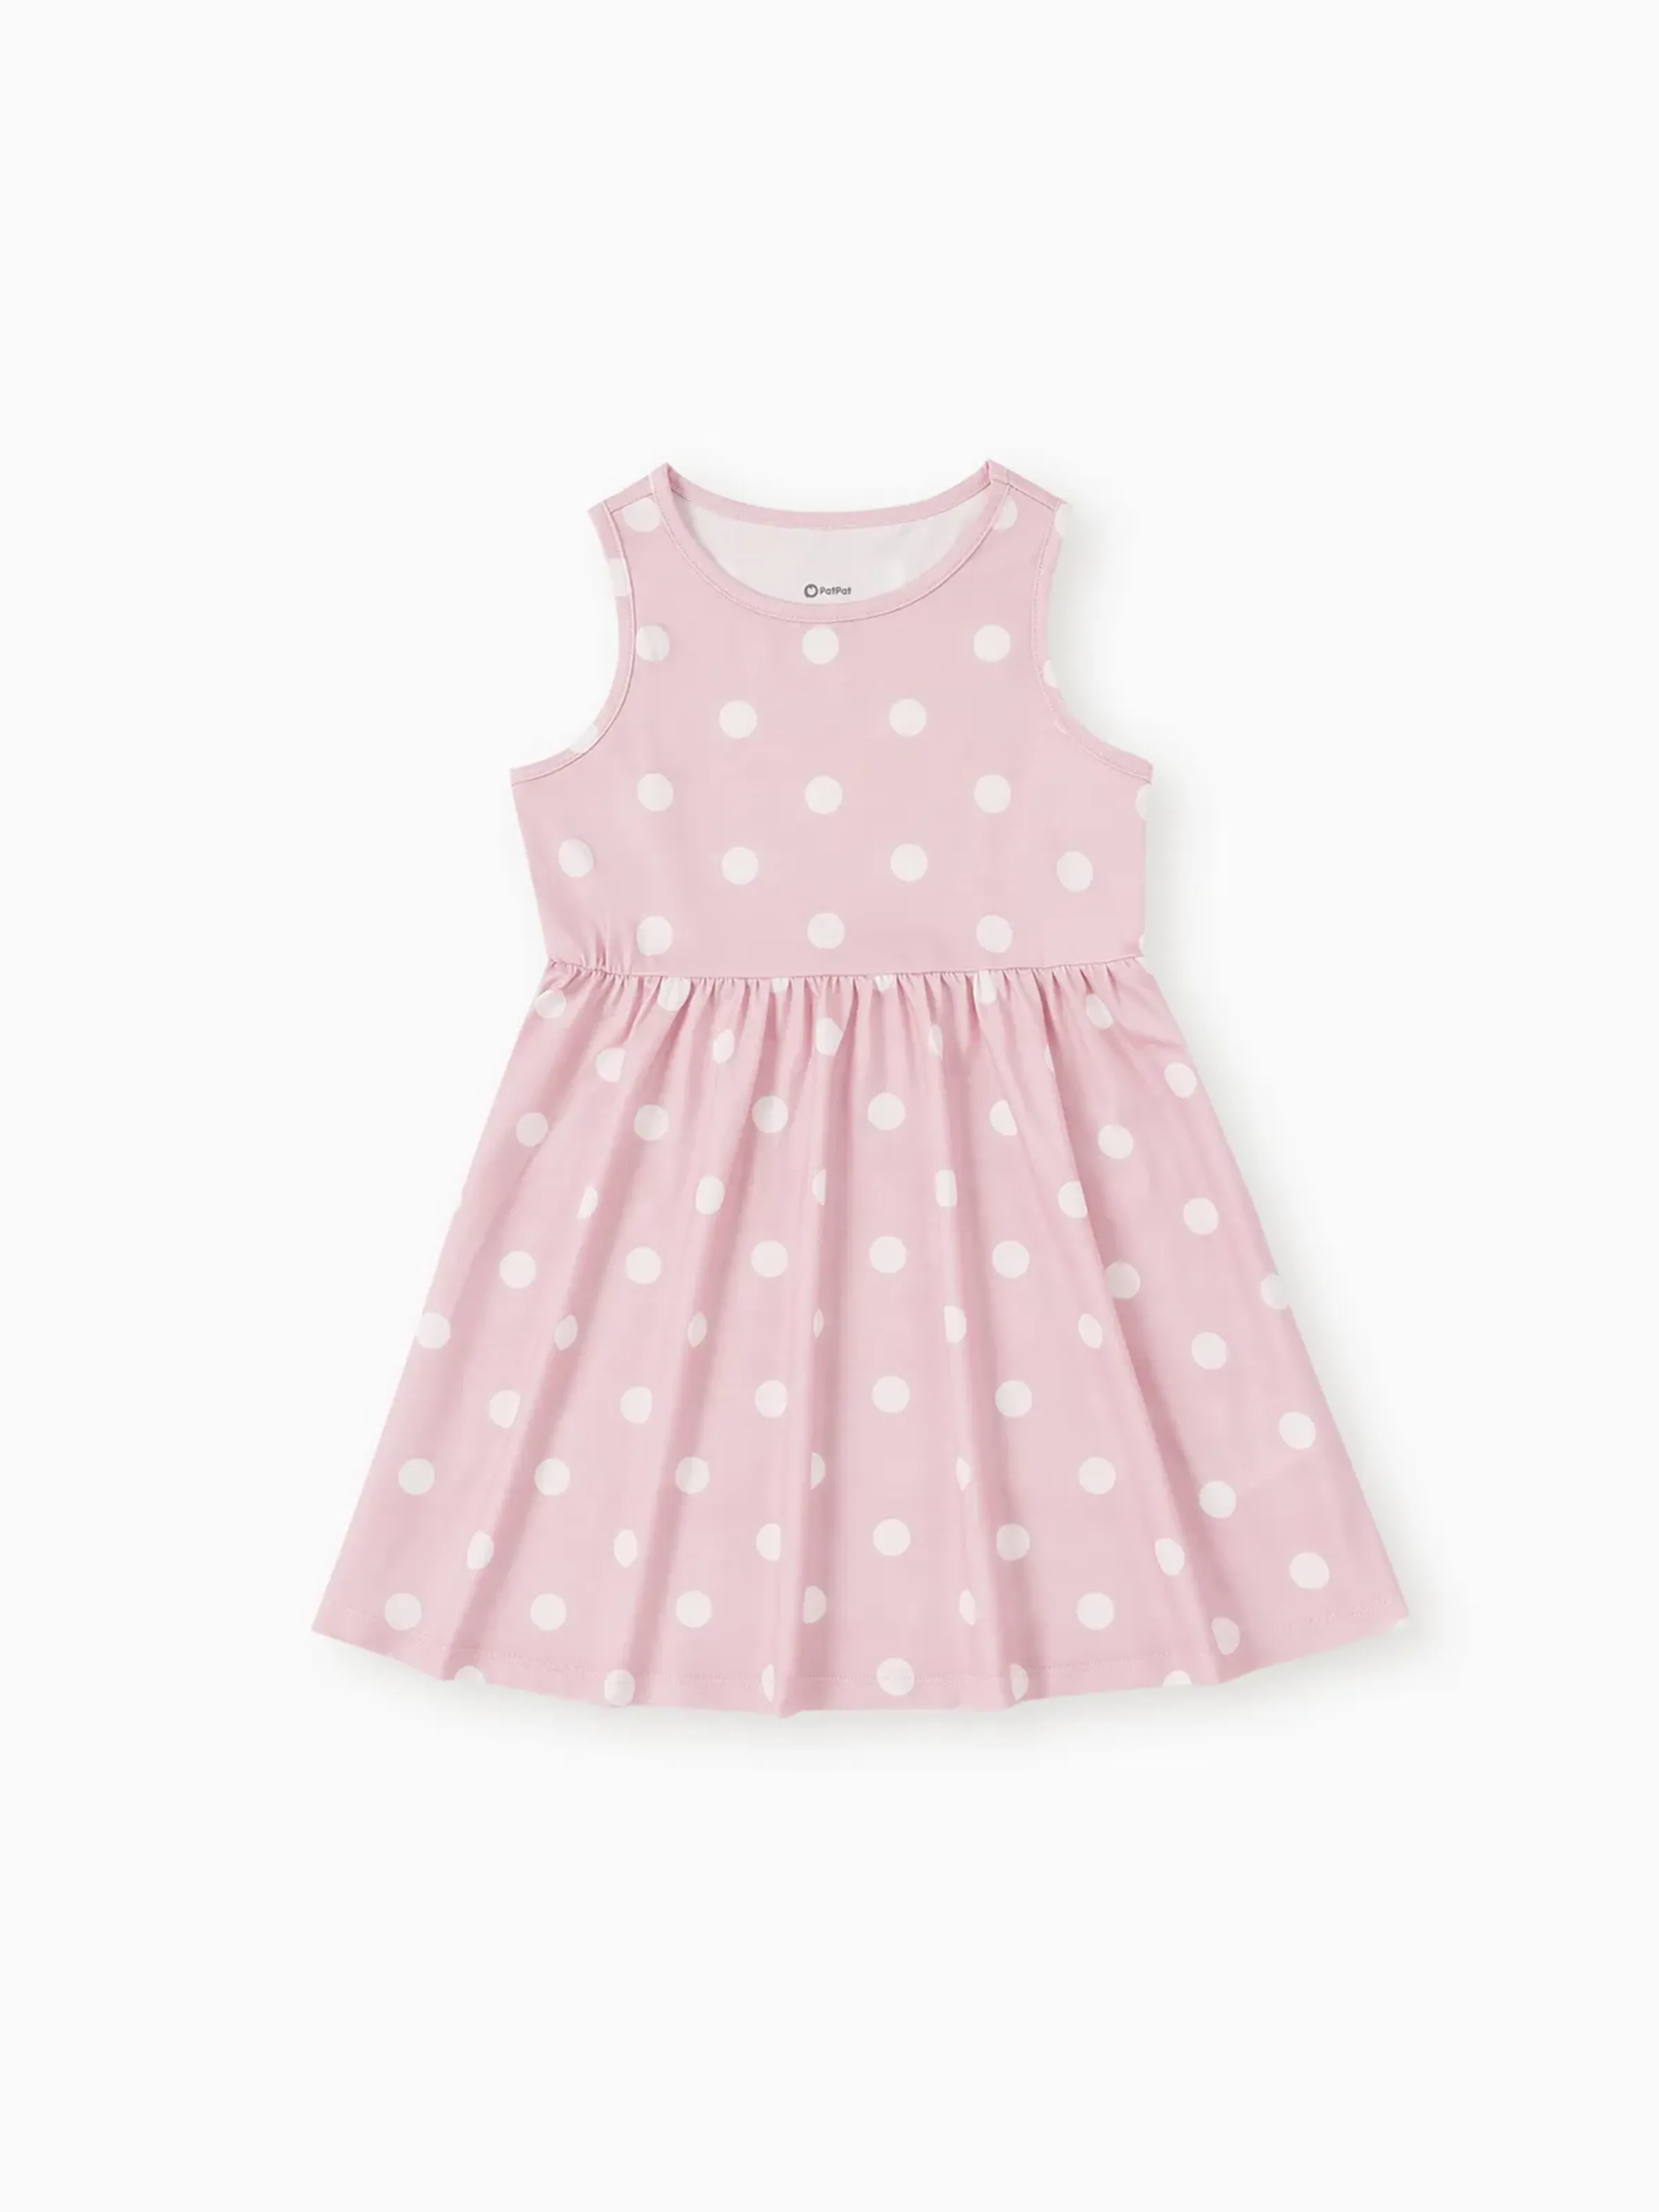 

Toddler/Kid Girl Heart Print/Polka dots Sleeveless Dress